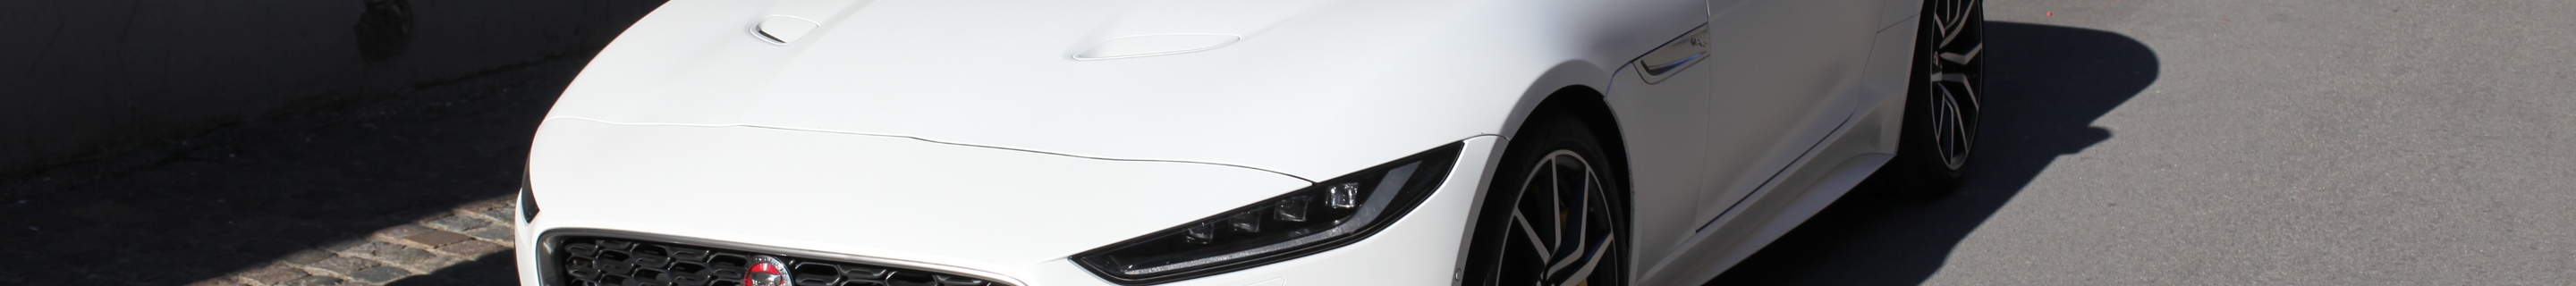 Jaguar F-TYPE R Convertible 2020